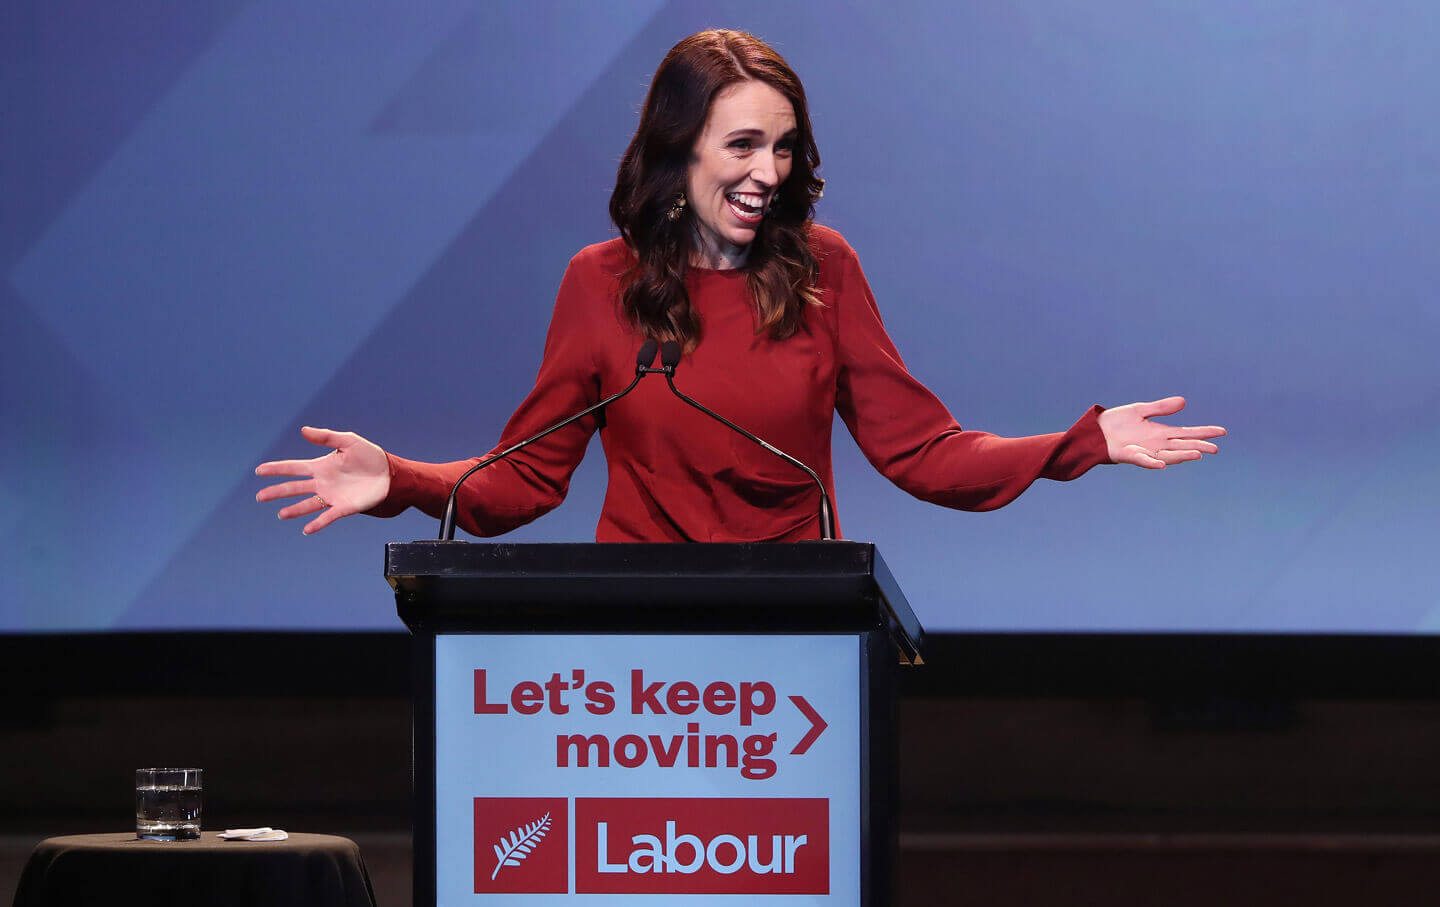 New Zealand PM Jacinda Ardern Secures Re-Election Via Landslide Victory